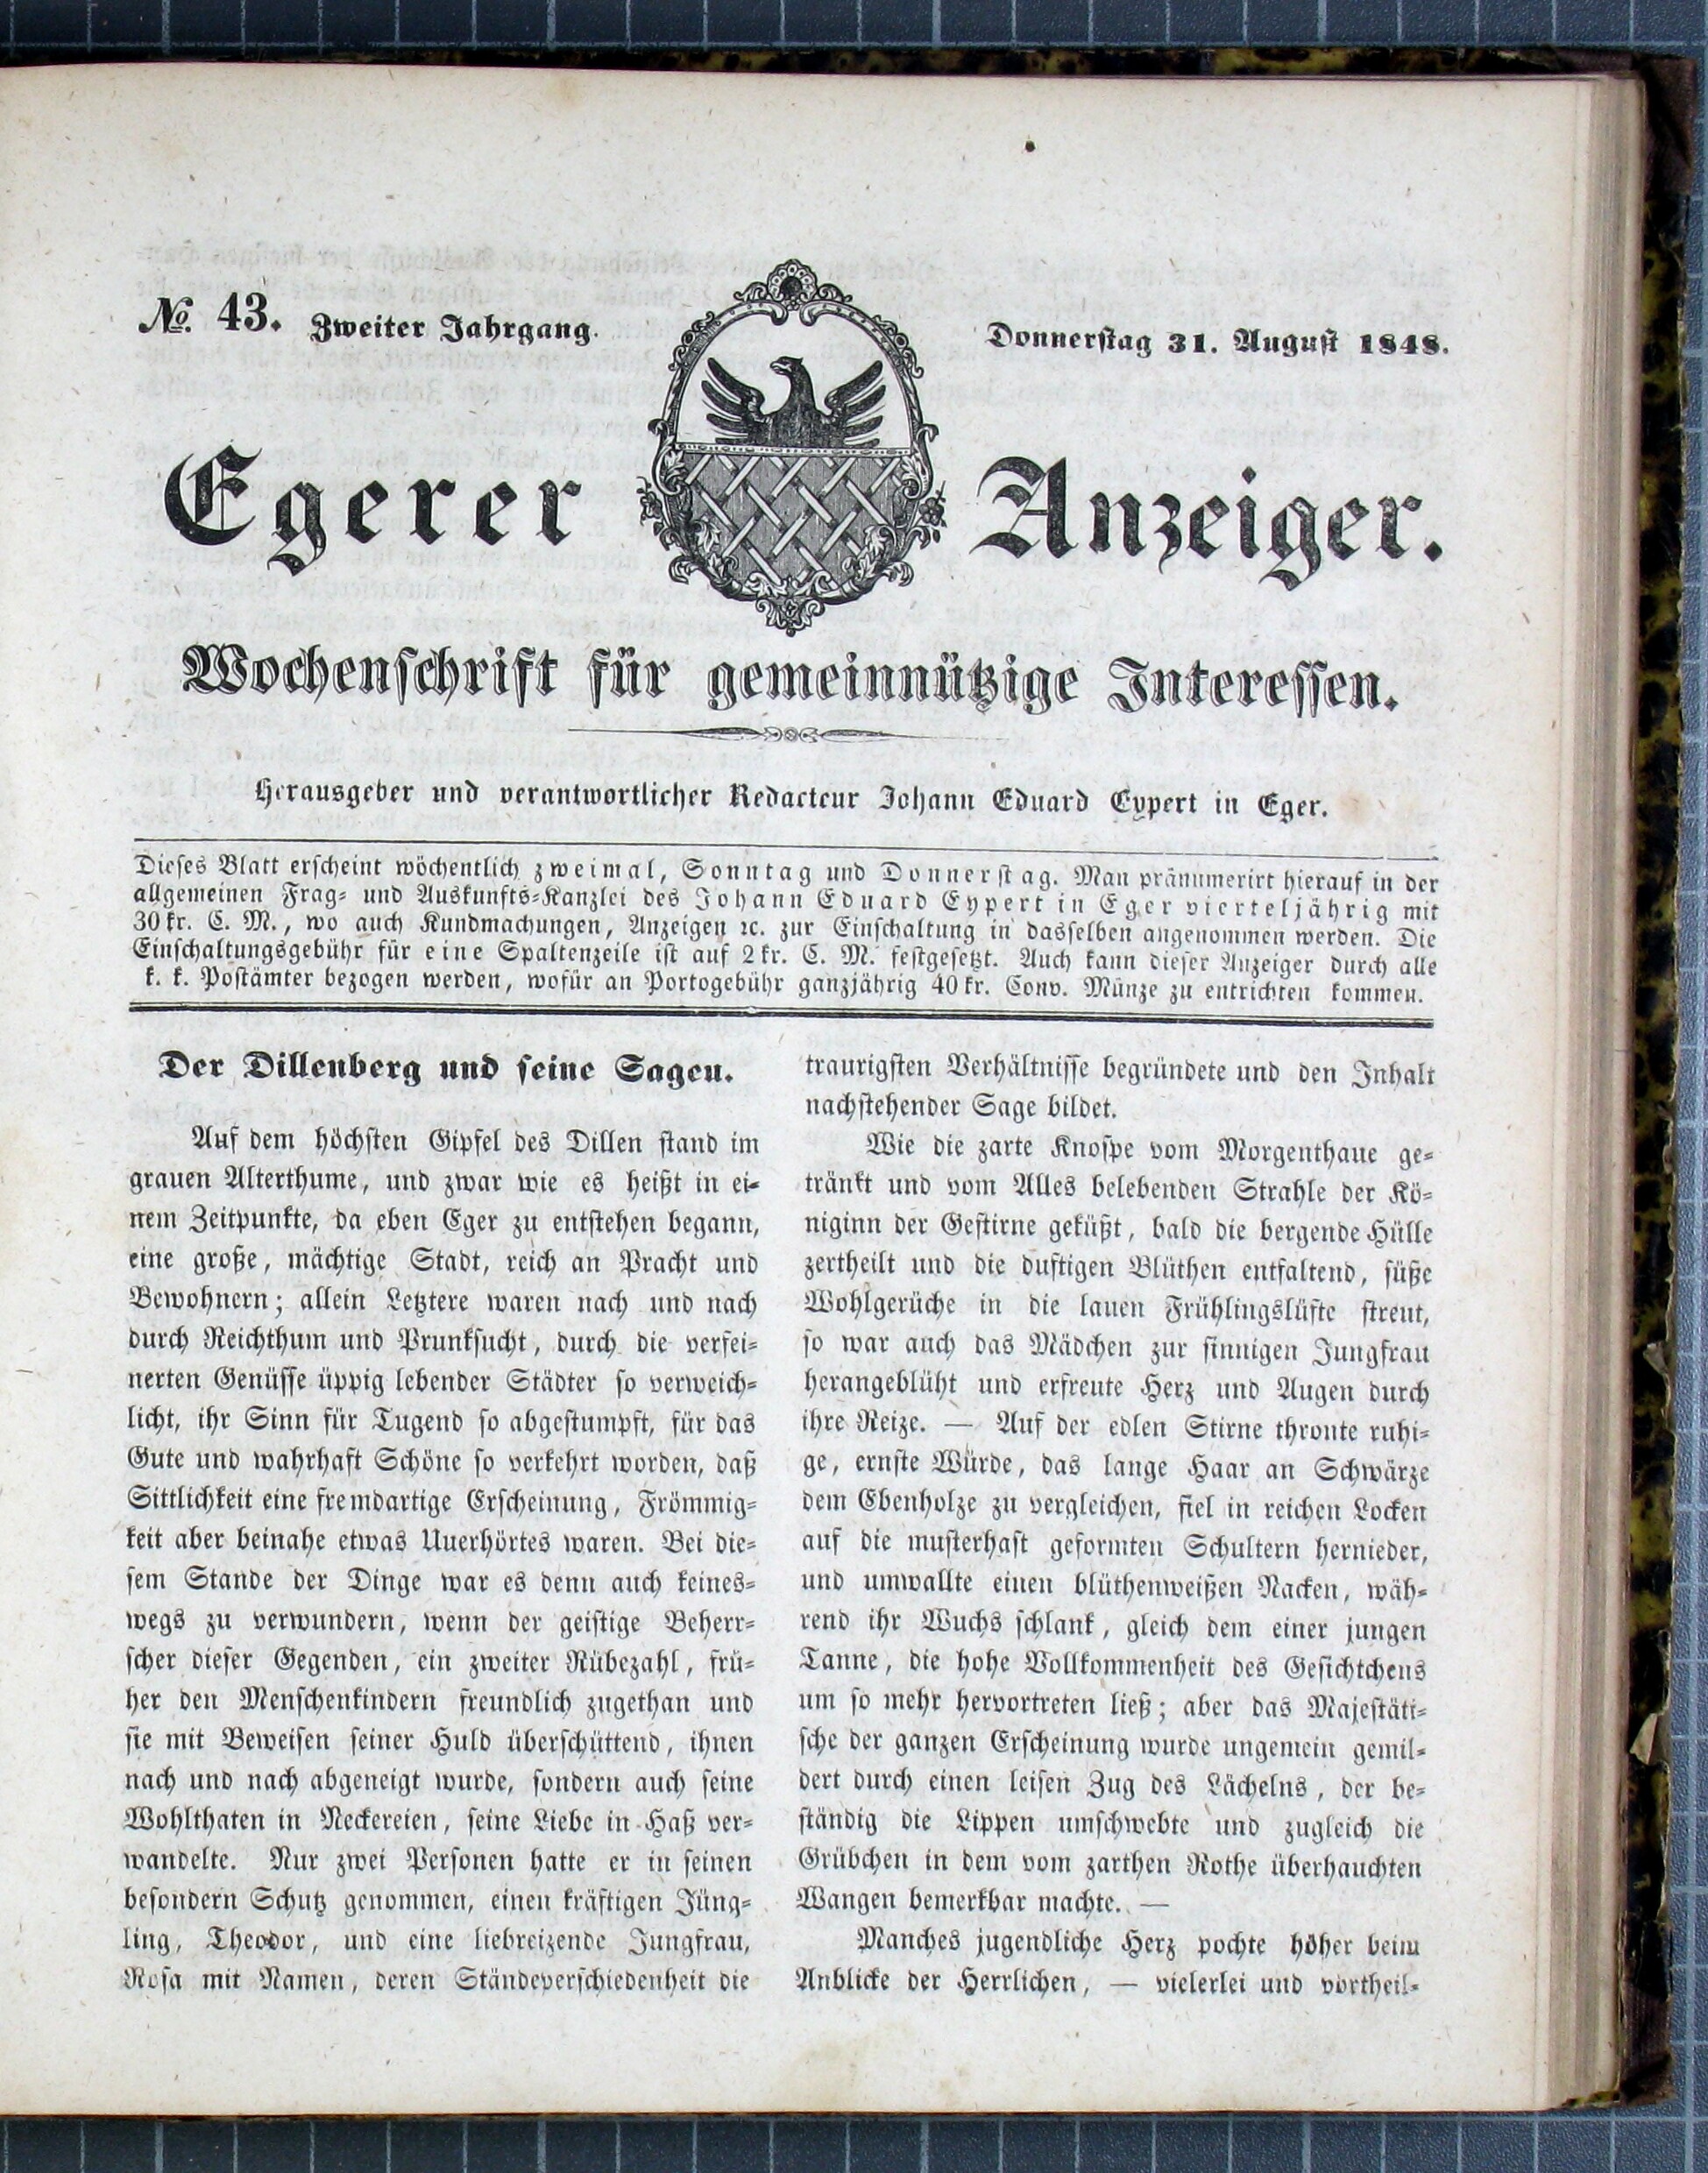 1. egerer-anzeiger-1848-08-31-n43_1125